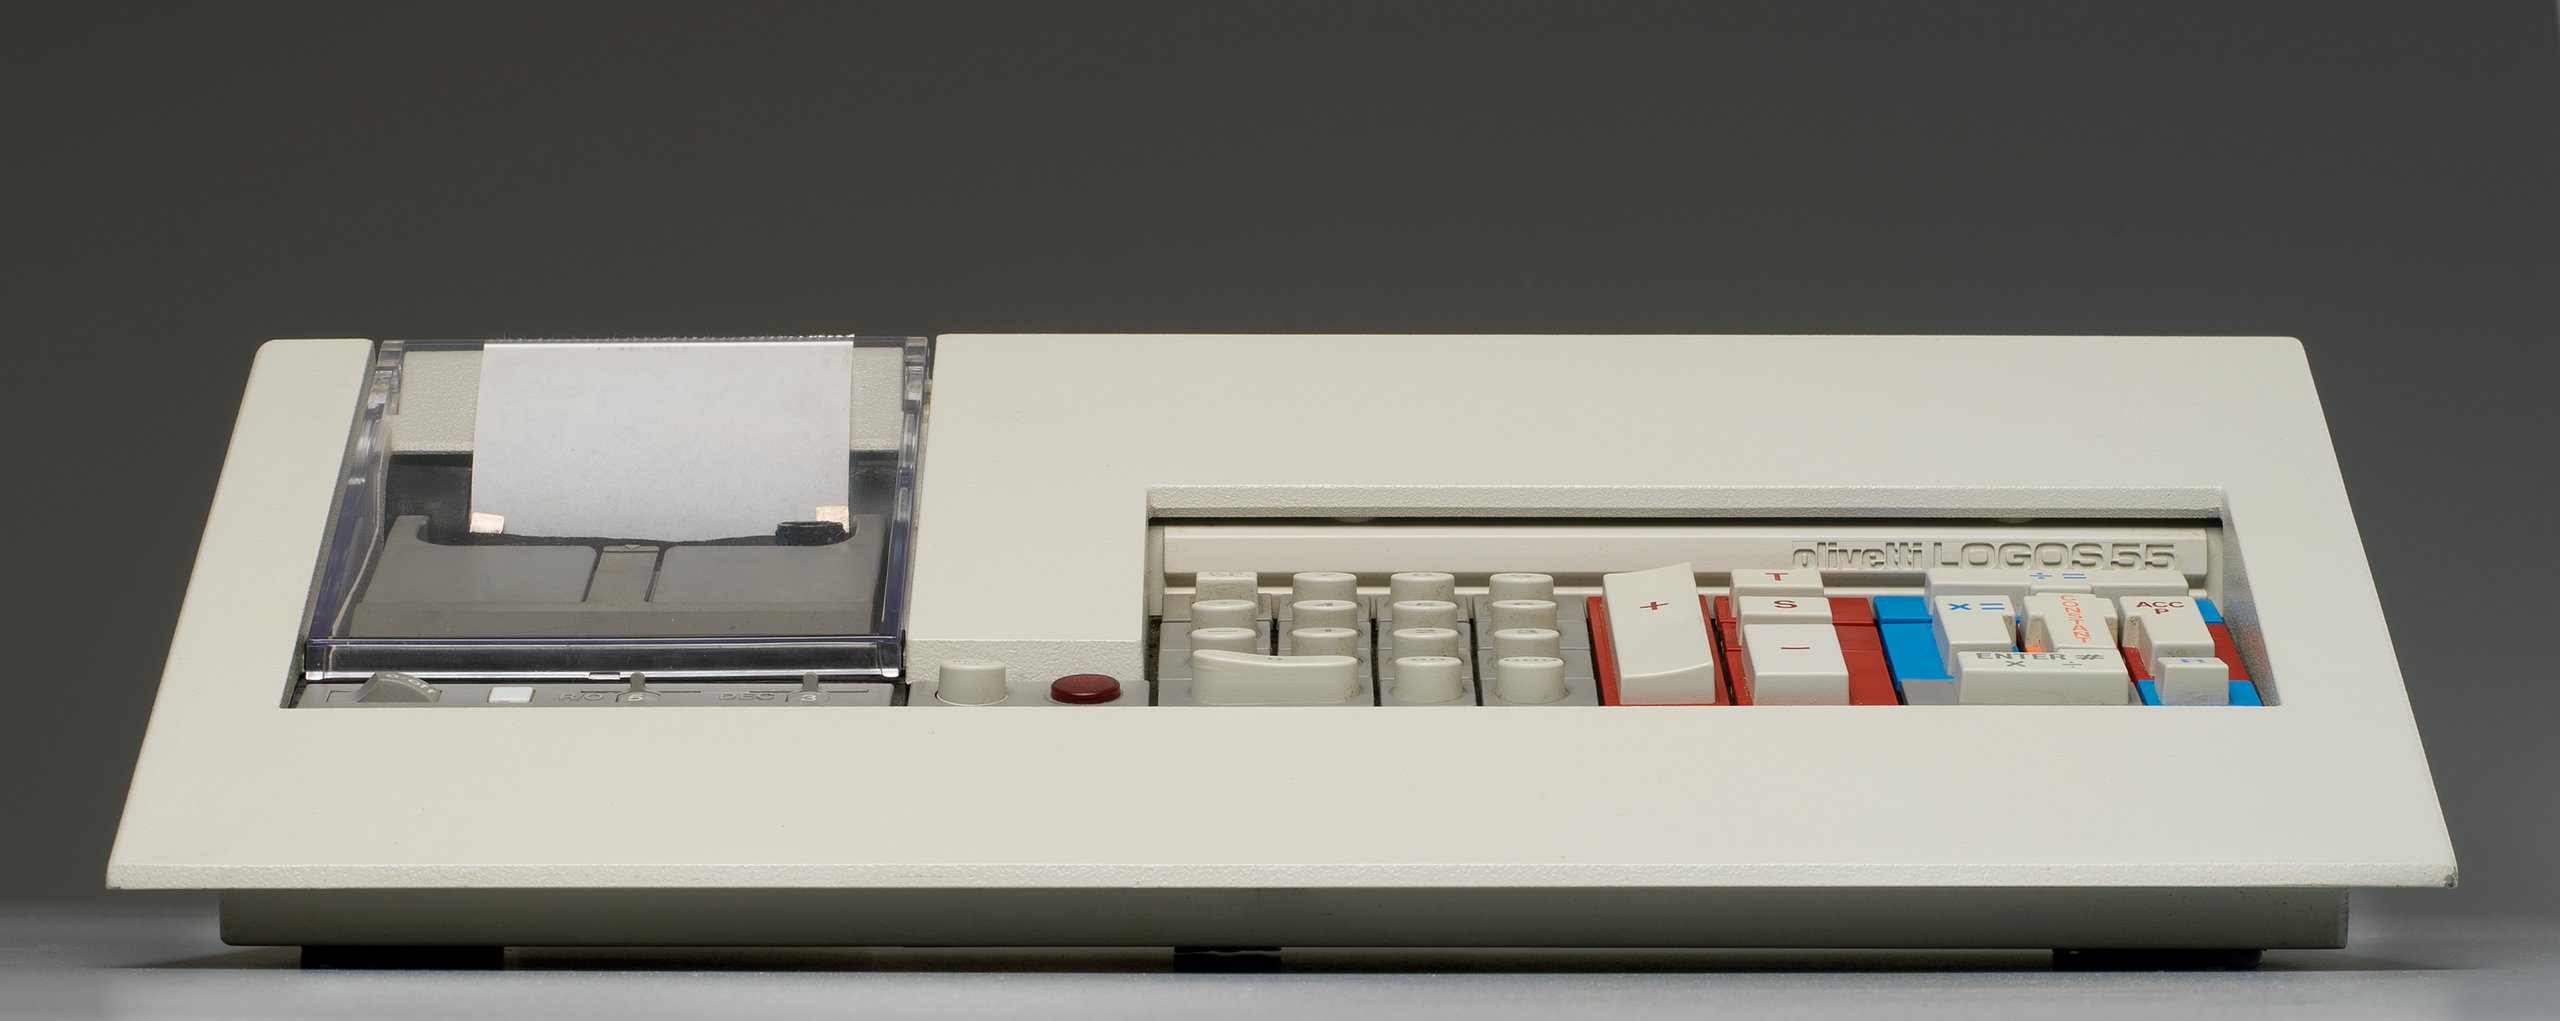 Olivetti Logos 55 desk top calculator